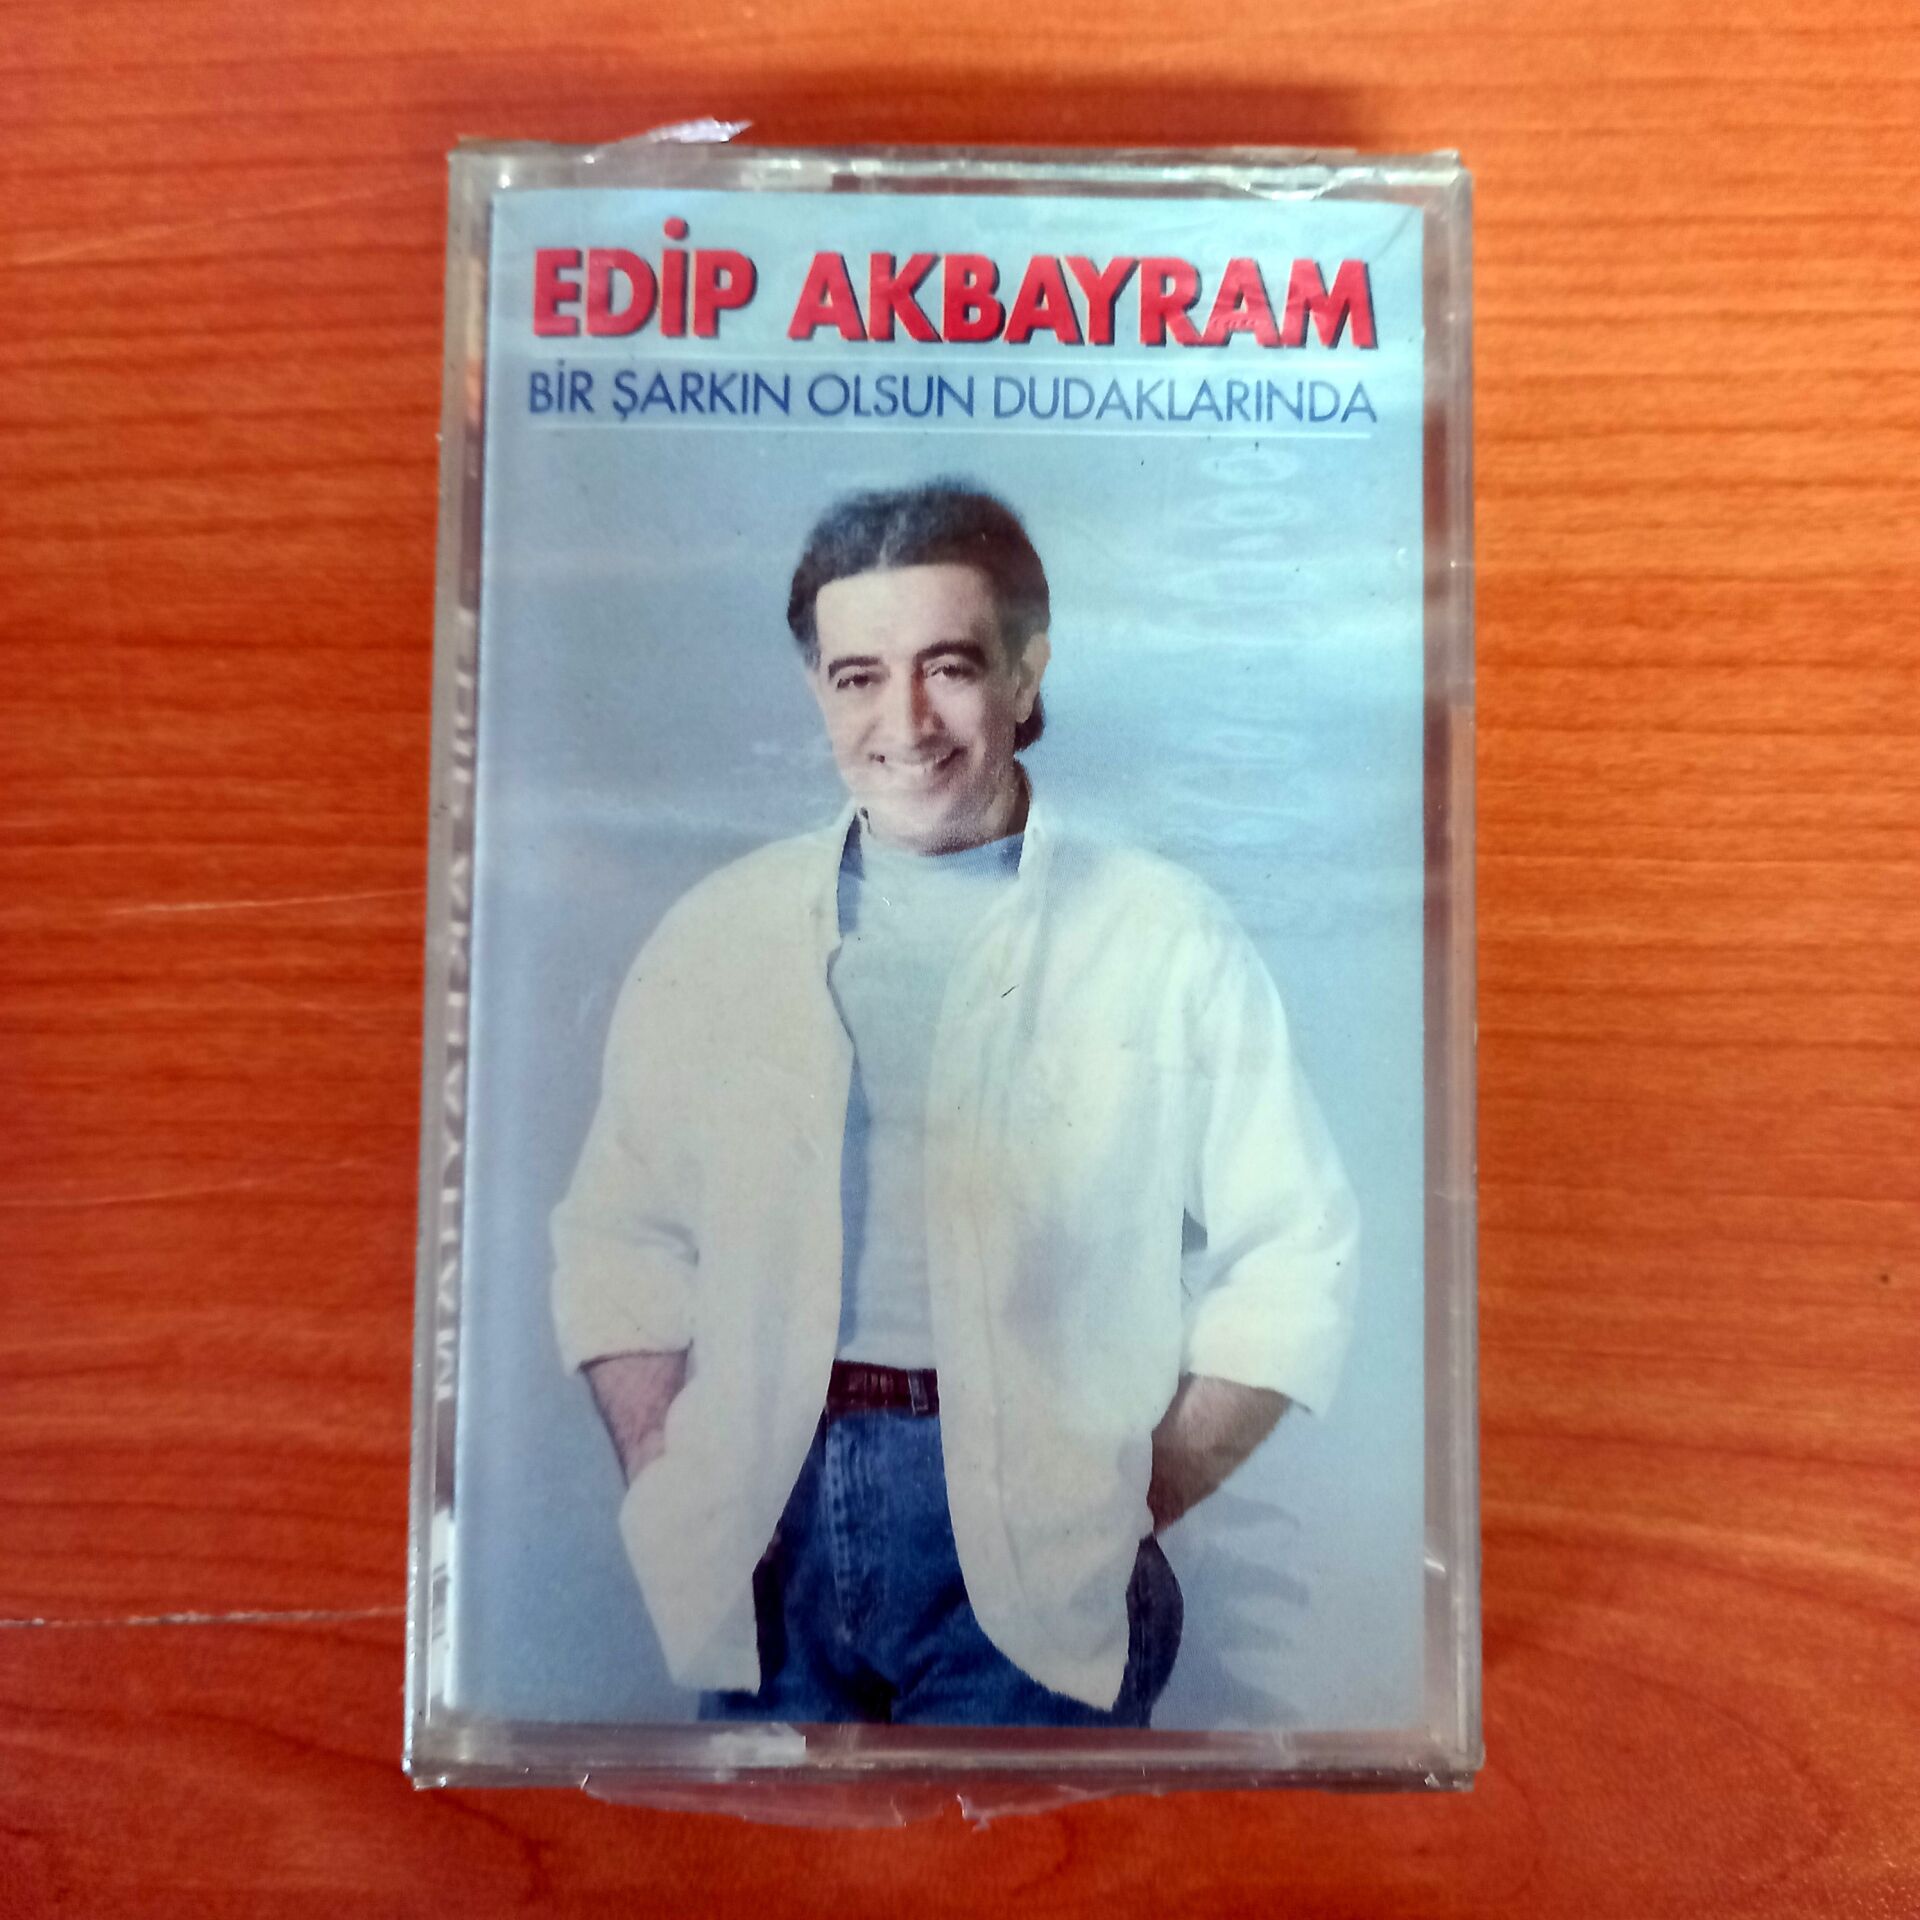 EDİP AKBAYRAM - BİR ŞARKIN OLSUN DUDAKLARINDA (1993) - KASET SIFIR